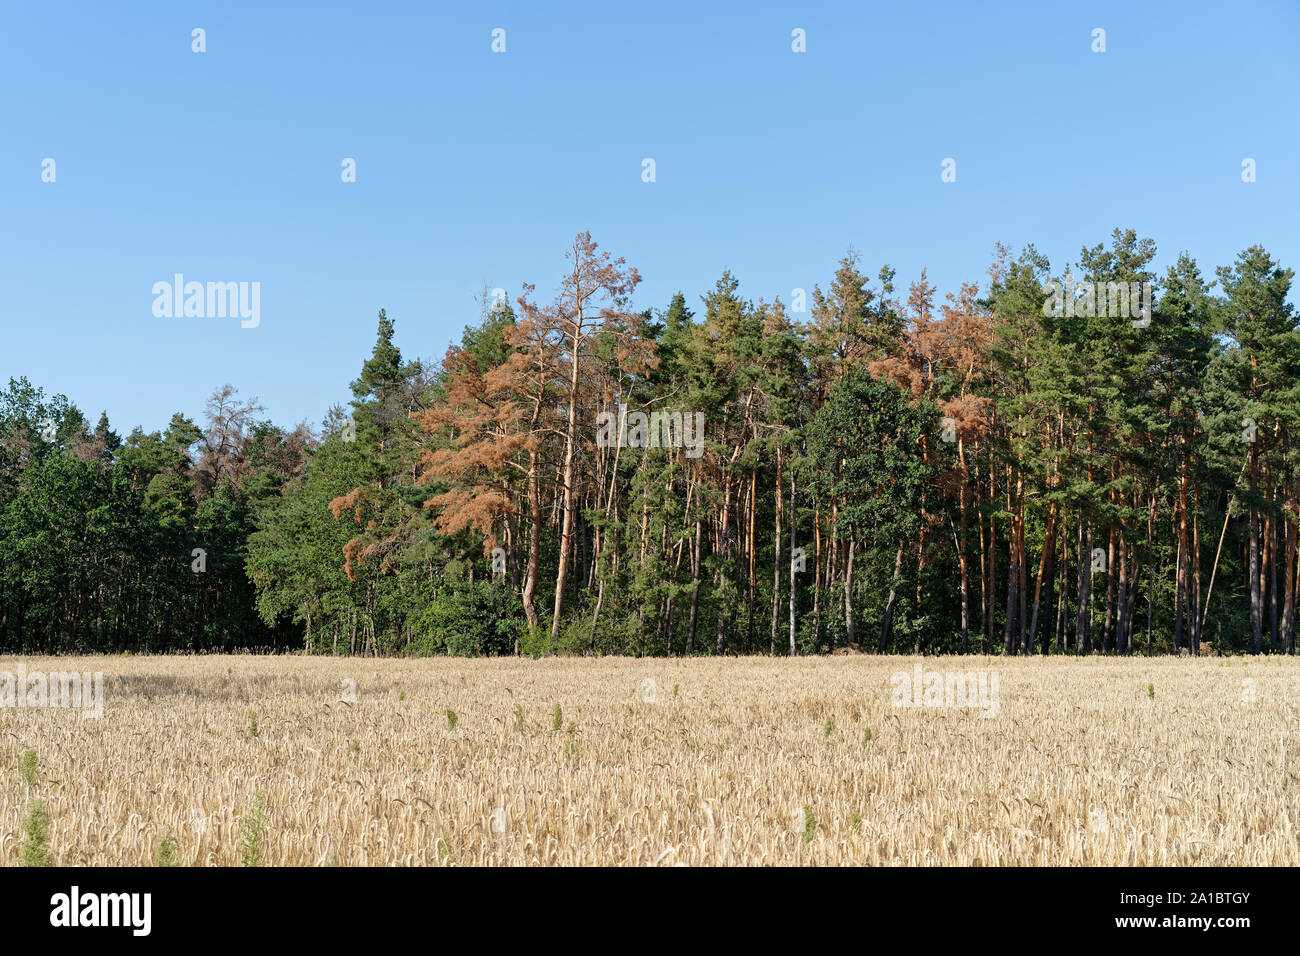 Dietro un cornfield, una foresta può essere visto, in cui è chiaramente riconoscibile che molti alberi stanno morendo, contrasto di colore verde e marrone - Location: tedesco Foto Stock